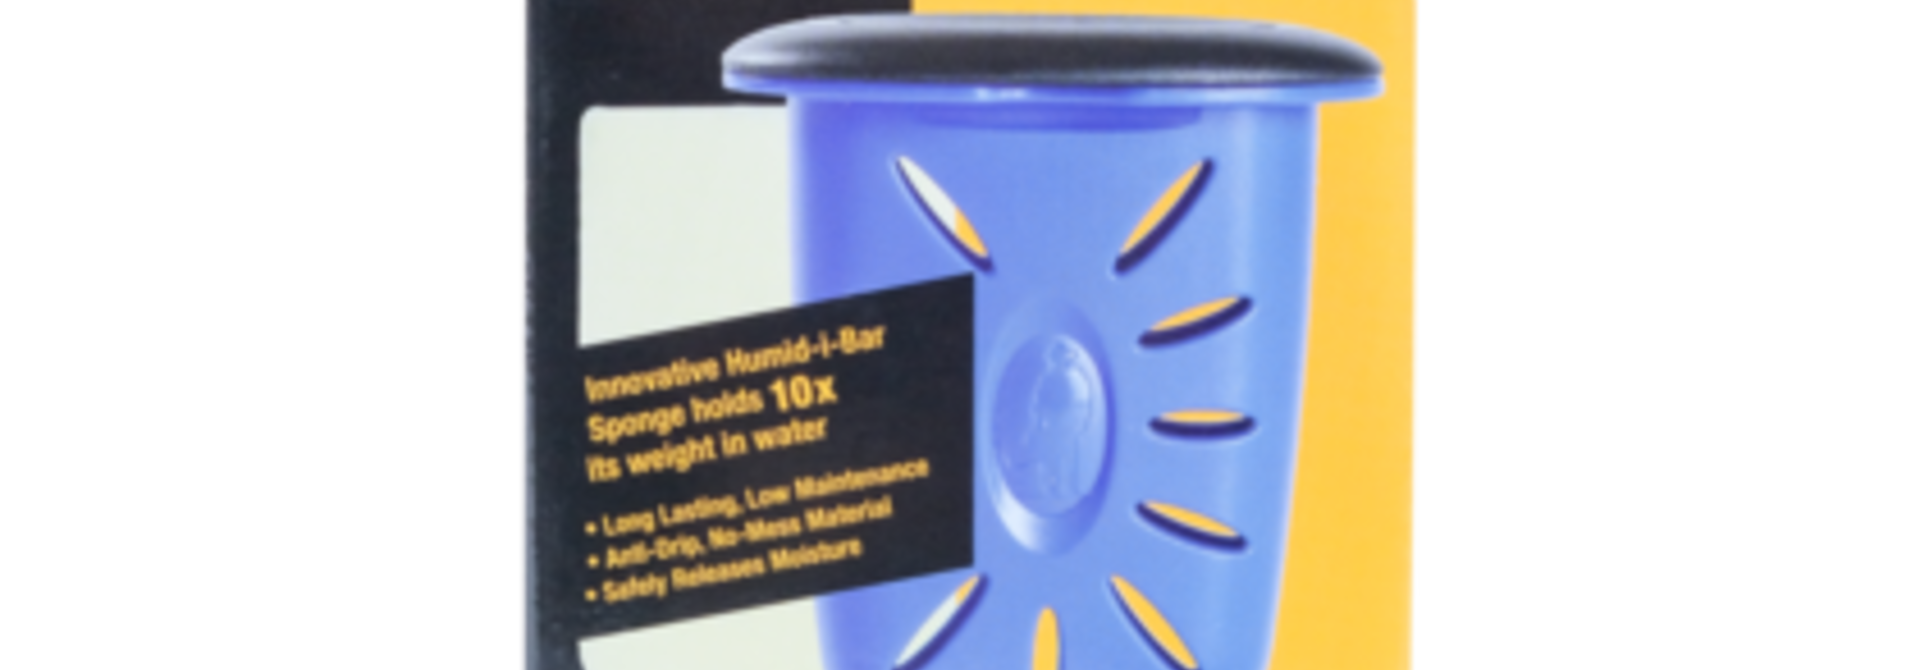 The Humilele - Ukulele Humidifier MN302